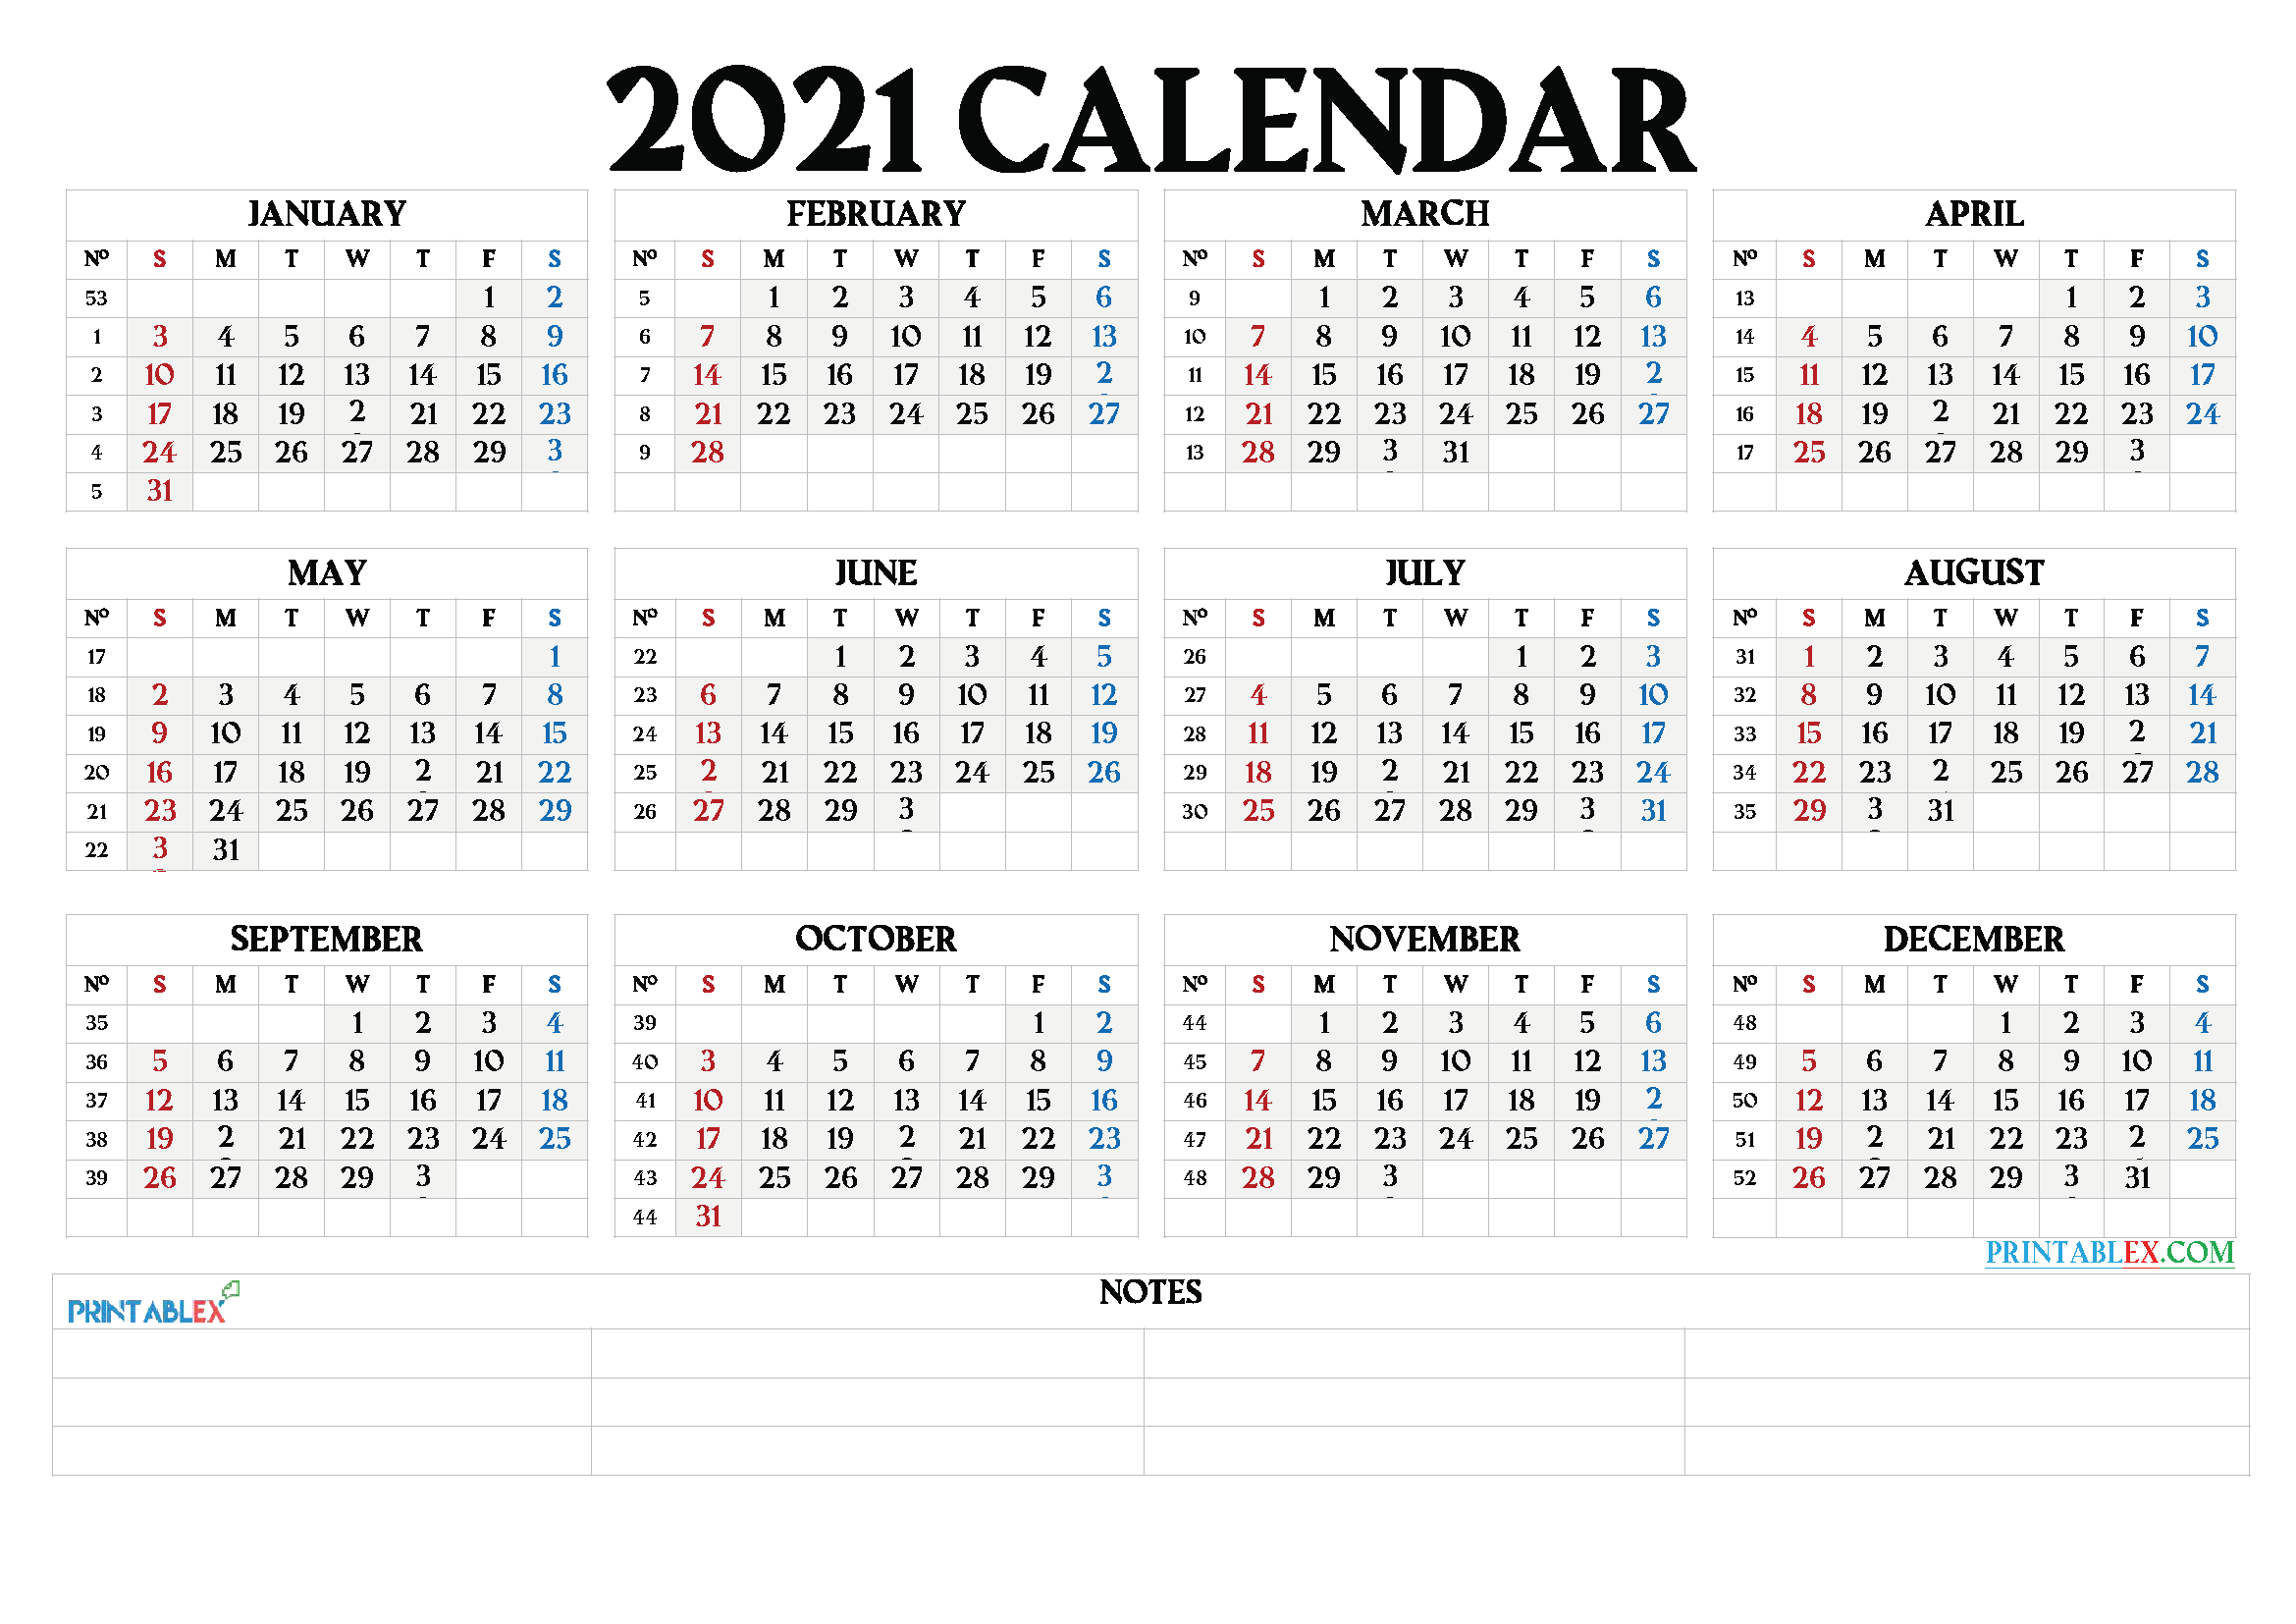 Printable 2021 Calendar by Month - 21ytw66